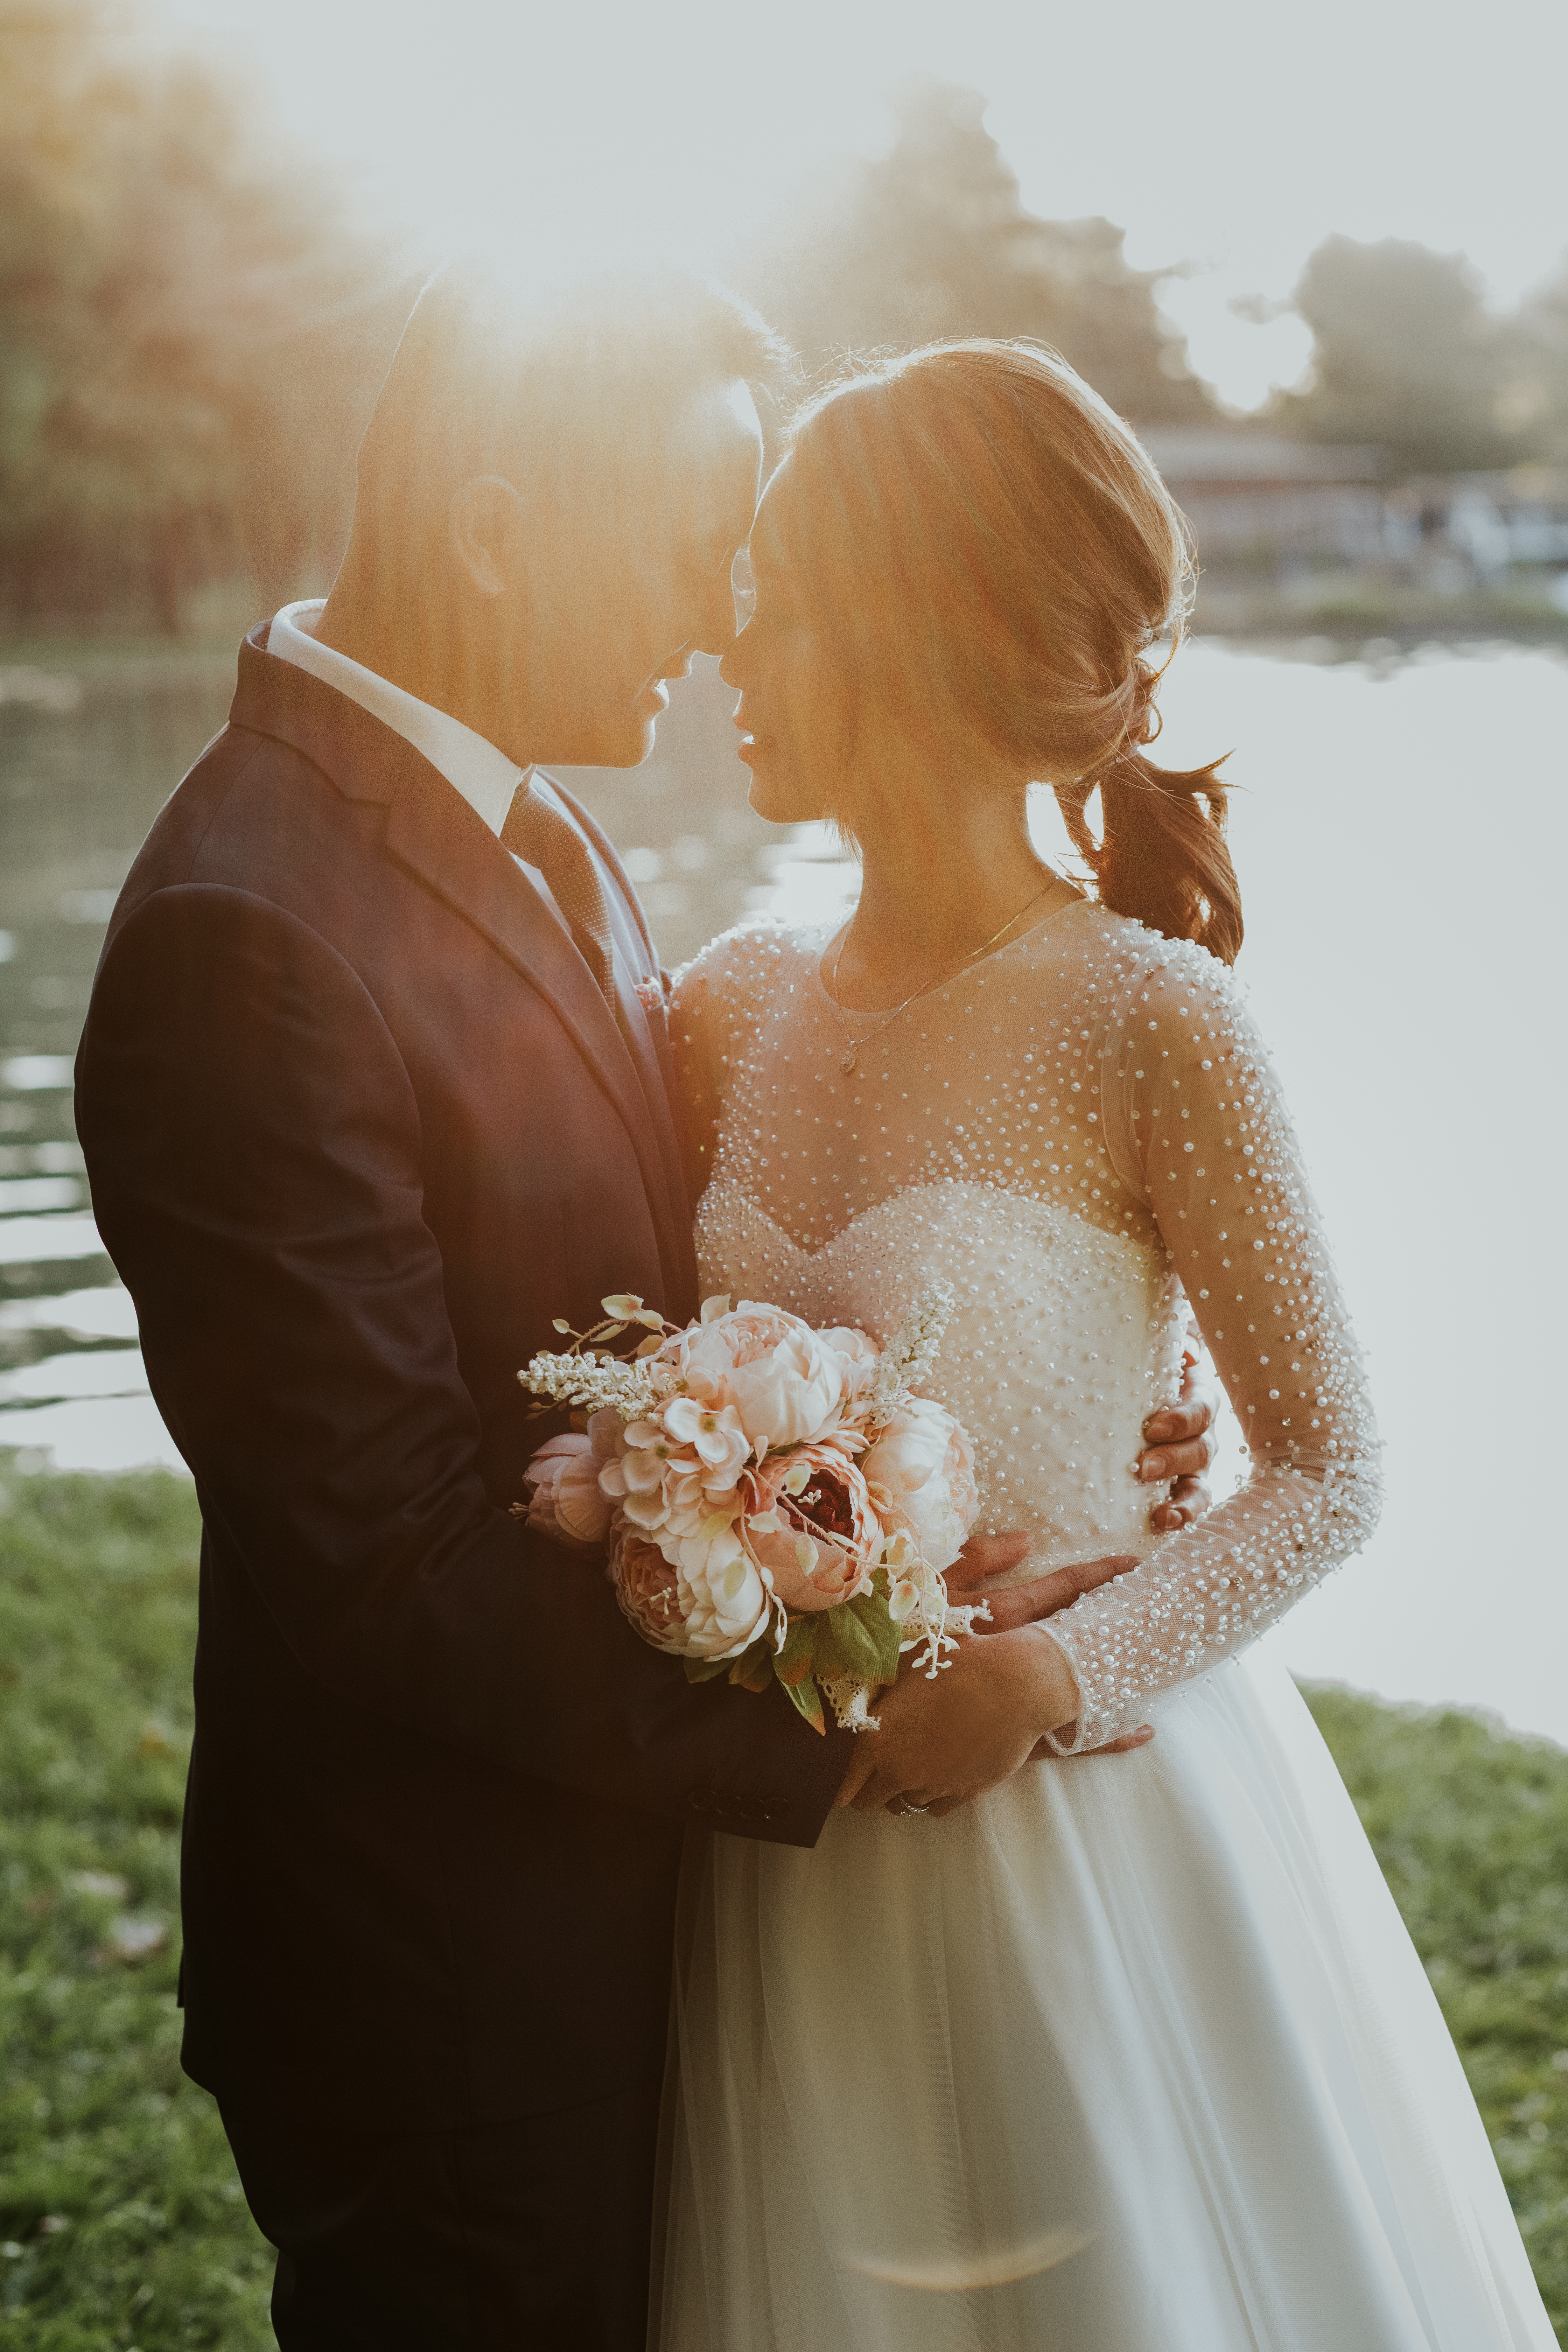 Cung cấp dịch vụ may đo và thiết kế đầm cưới tạo sự thanh lịch cho cô dâu Việt Kiều Mỹ